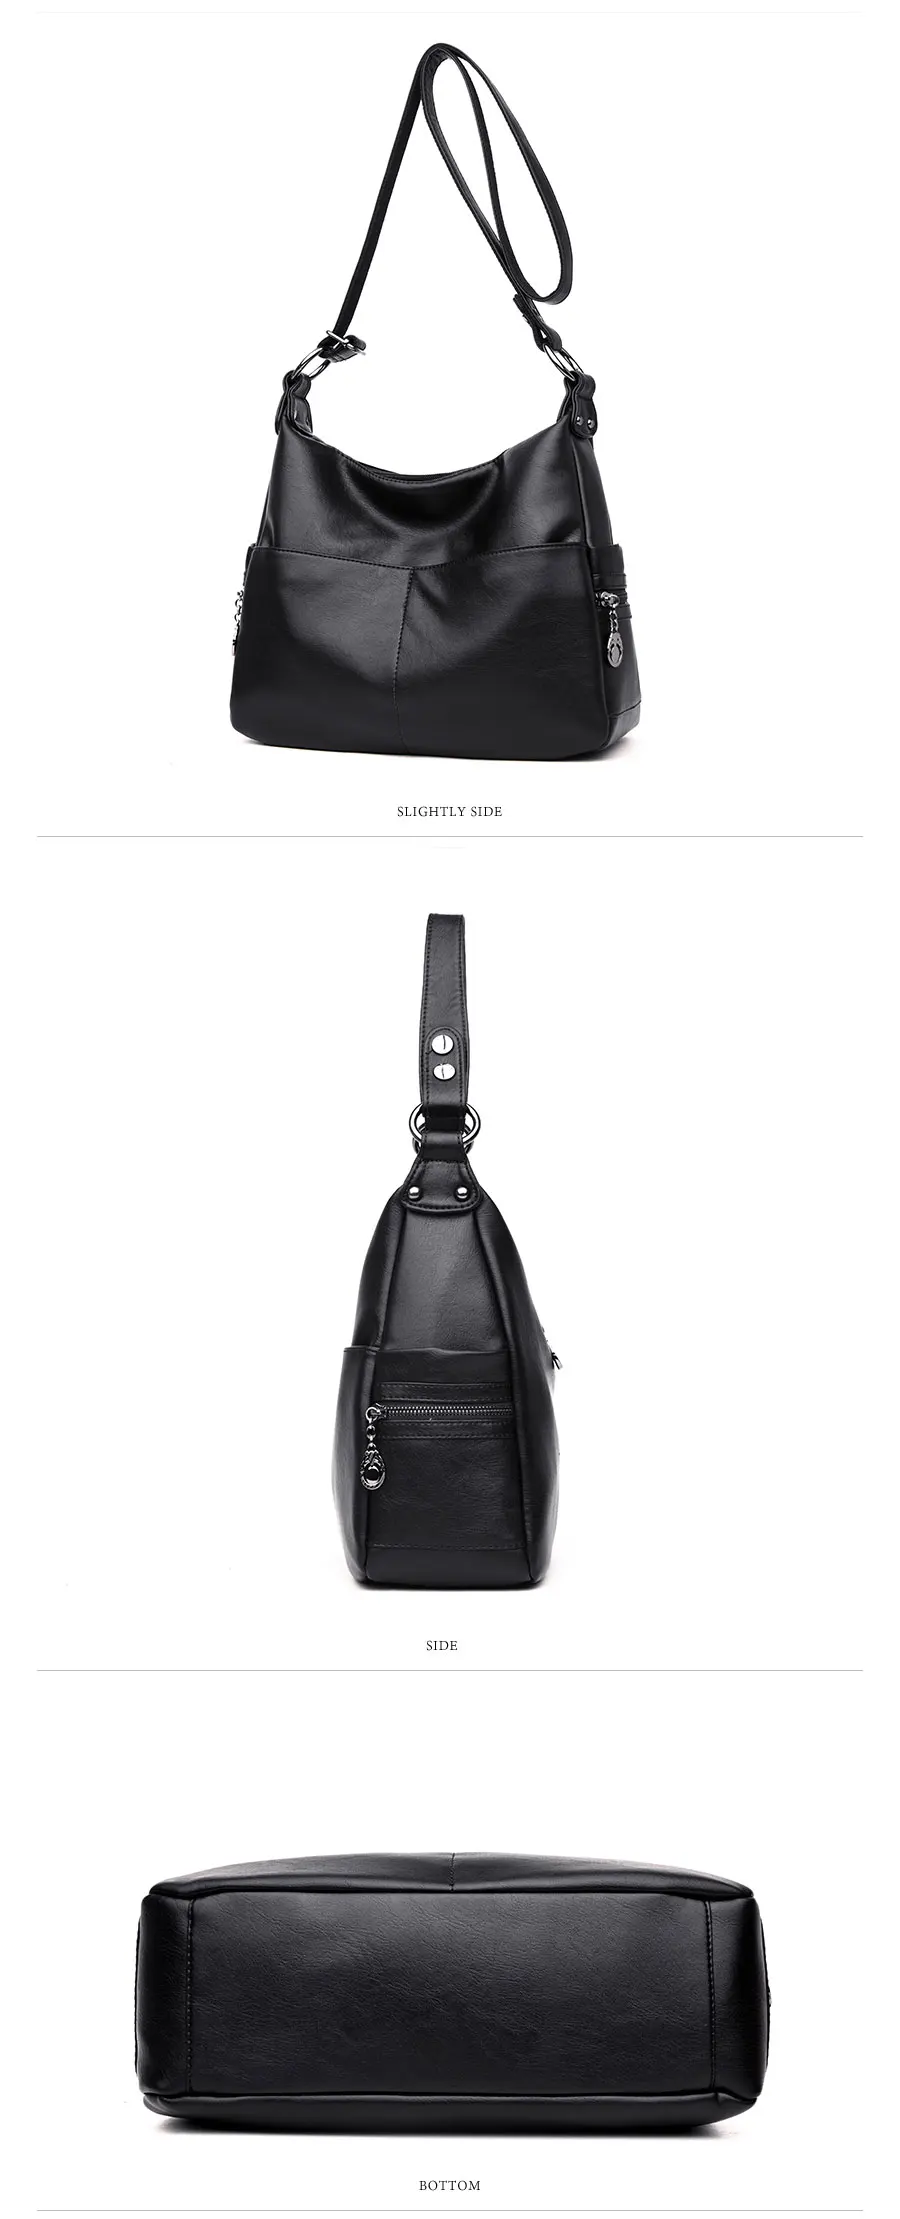 Lanzhixin женские сумки из стираной кожи, сумки через плечо, женские сумки-мессенджеры, роскошные дизайнерские сумки через плечо, сумки с верхней ручкой 990S